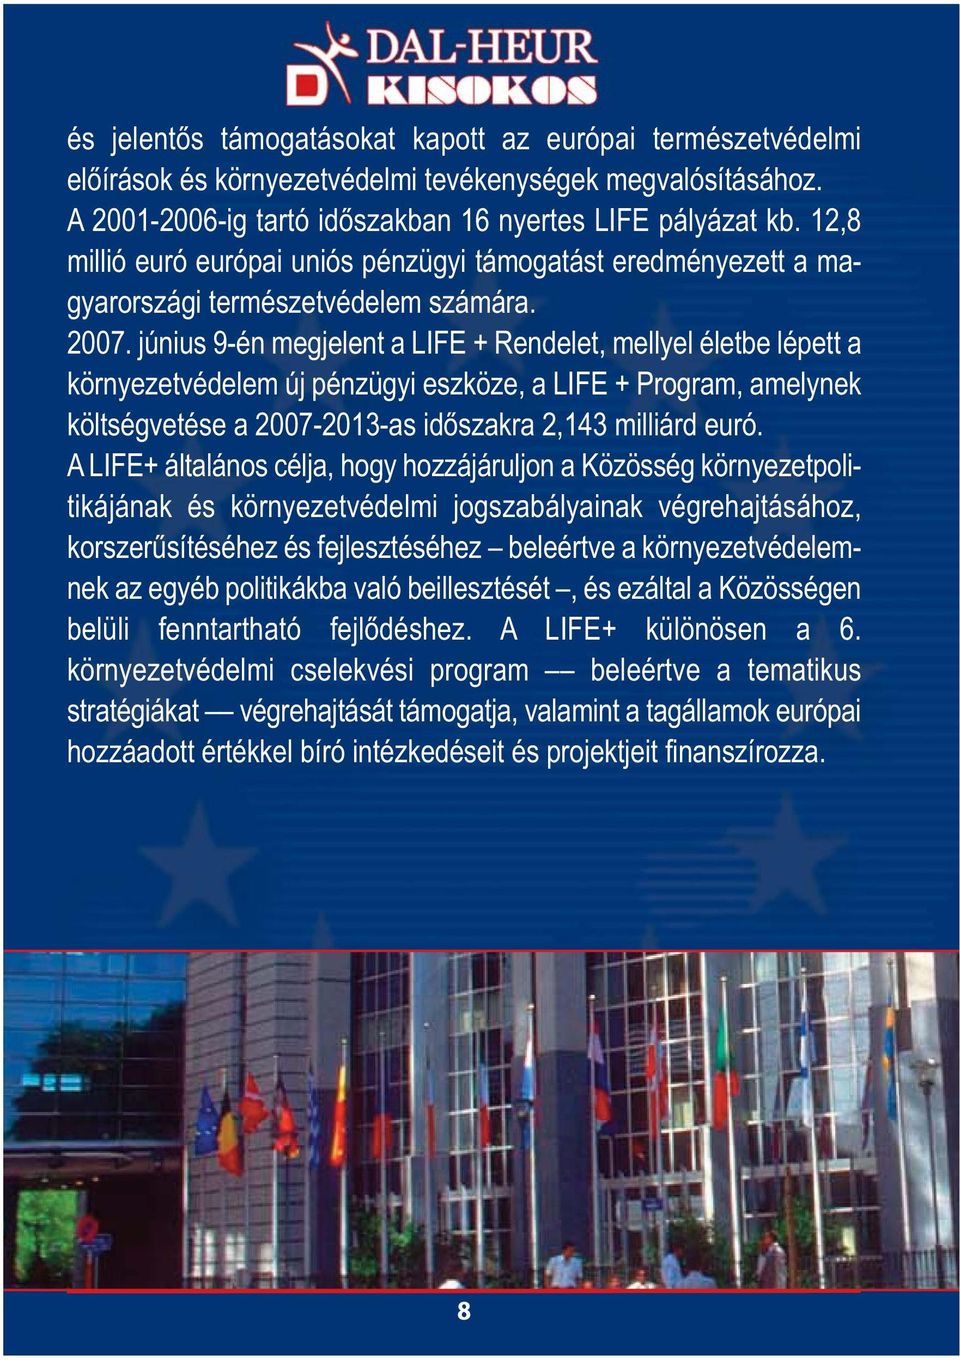 június 9-én megjelent a LIFE + Rendelet, mellyel életbe lépett a környezetvédelem új pénzügyi eszköze, a LIFE + Program, amelynek költségvetése a 2007-2013-as időszakra 2,143 milliárd euró.